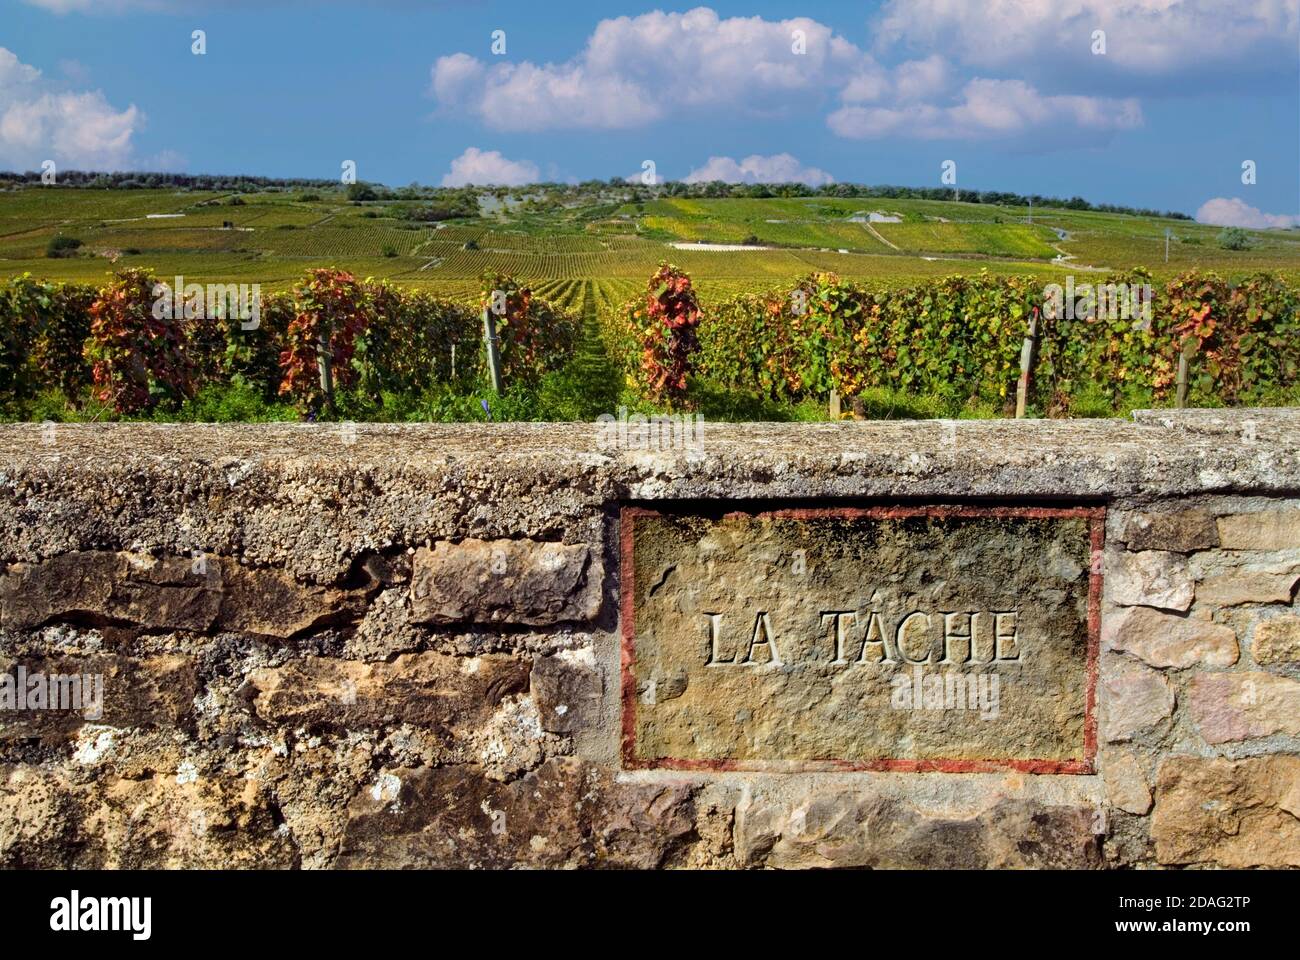 Le vignoble de la Tache plaque en pierre gravée sur le mur limite du domaine de la Romanee-Conti, Vosne Romanee, Côte d’Or, France Banque D'Images